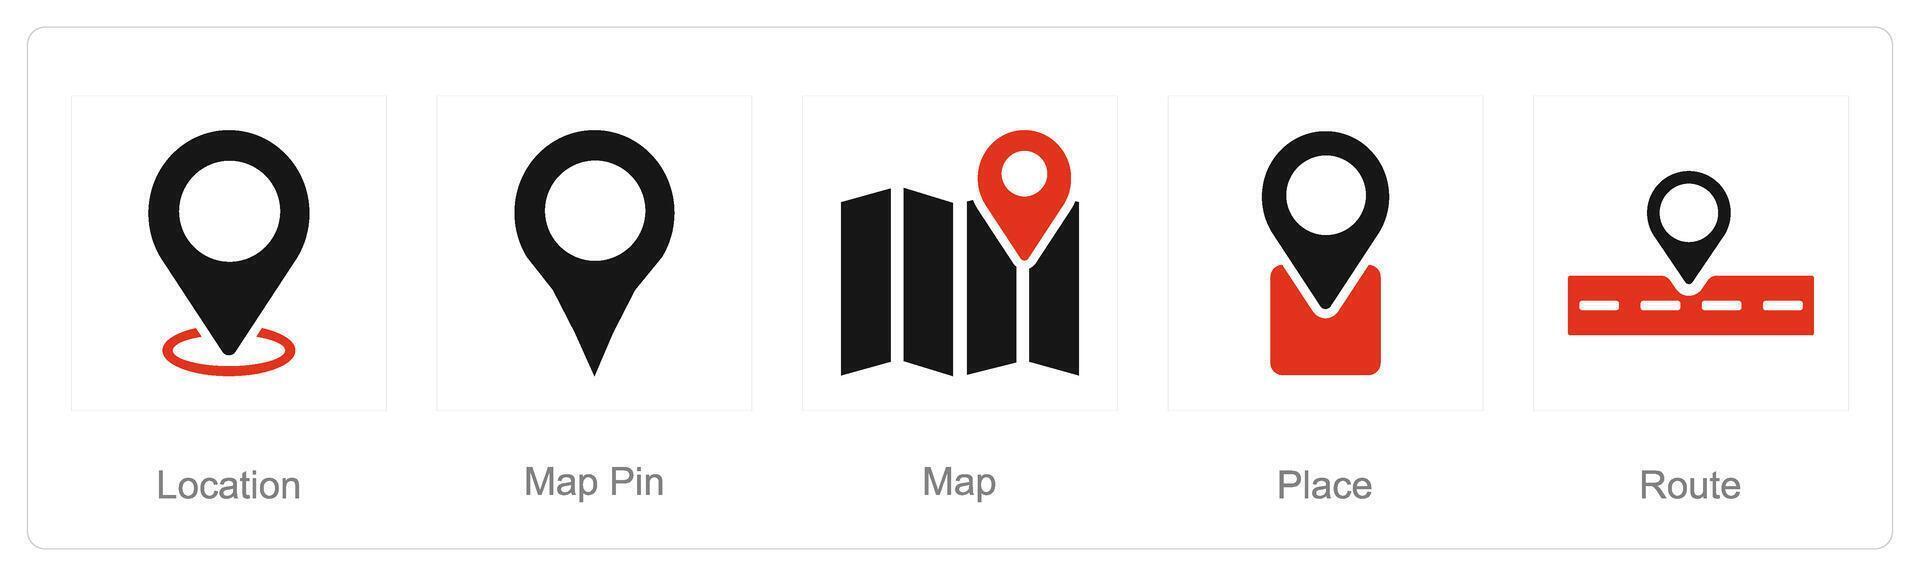 un' impostato di 5 Posizione icone come Posizione, carta geografica spillo, carta geografica vettore